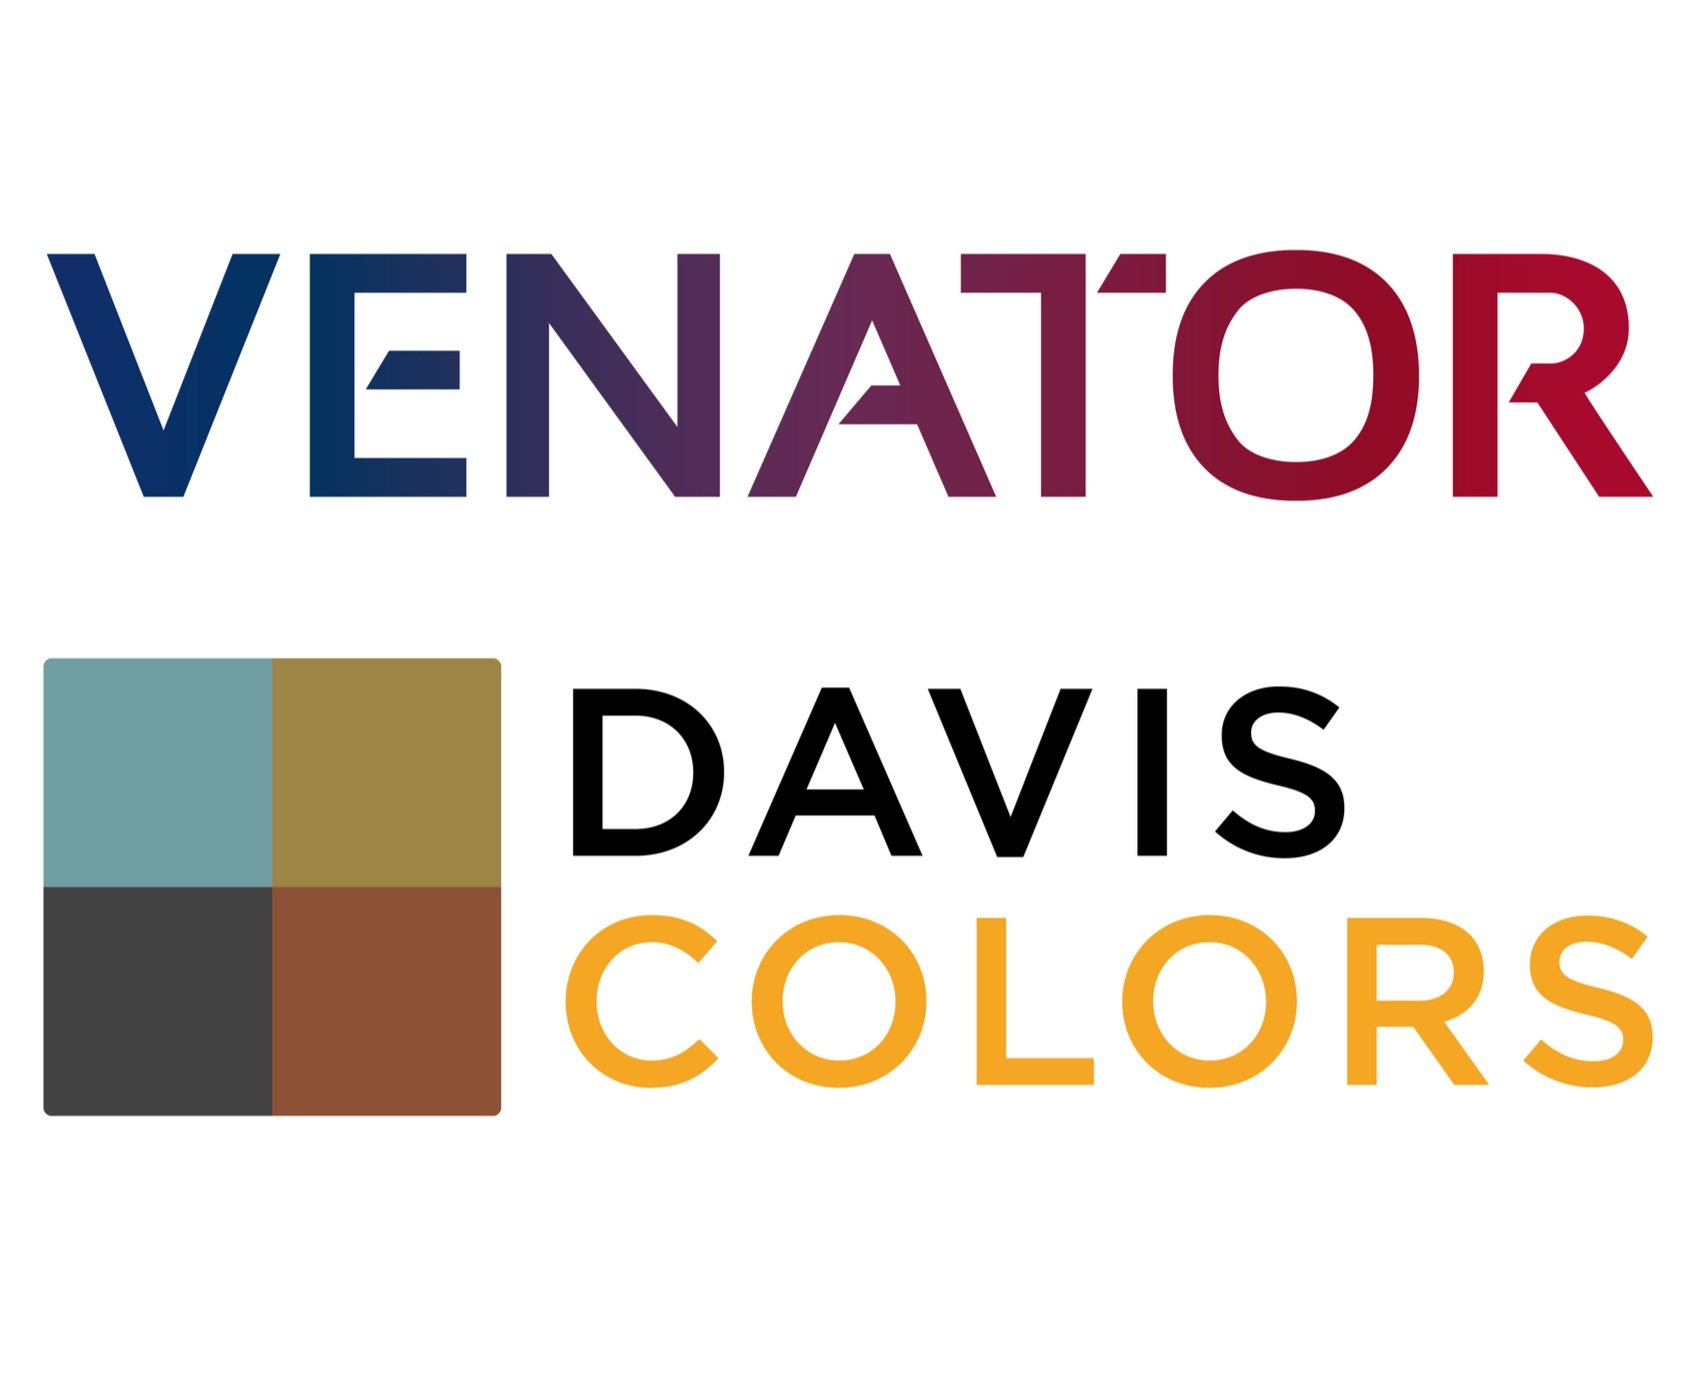 venator-davis-colors-logo-lockup-01.jpg